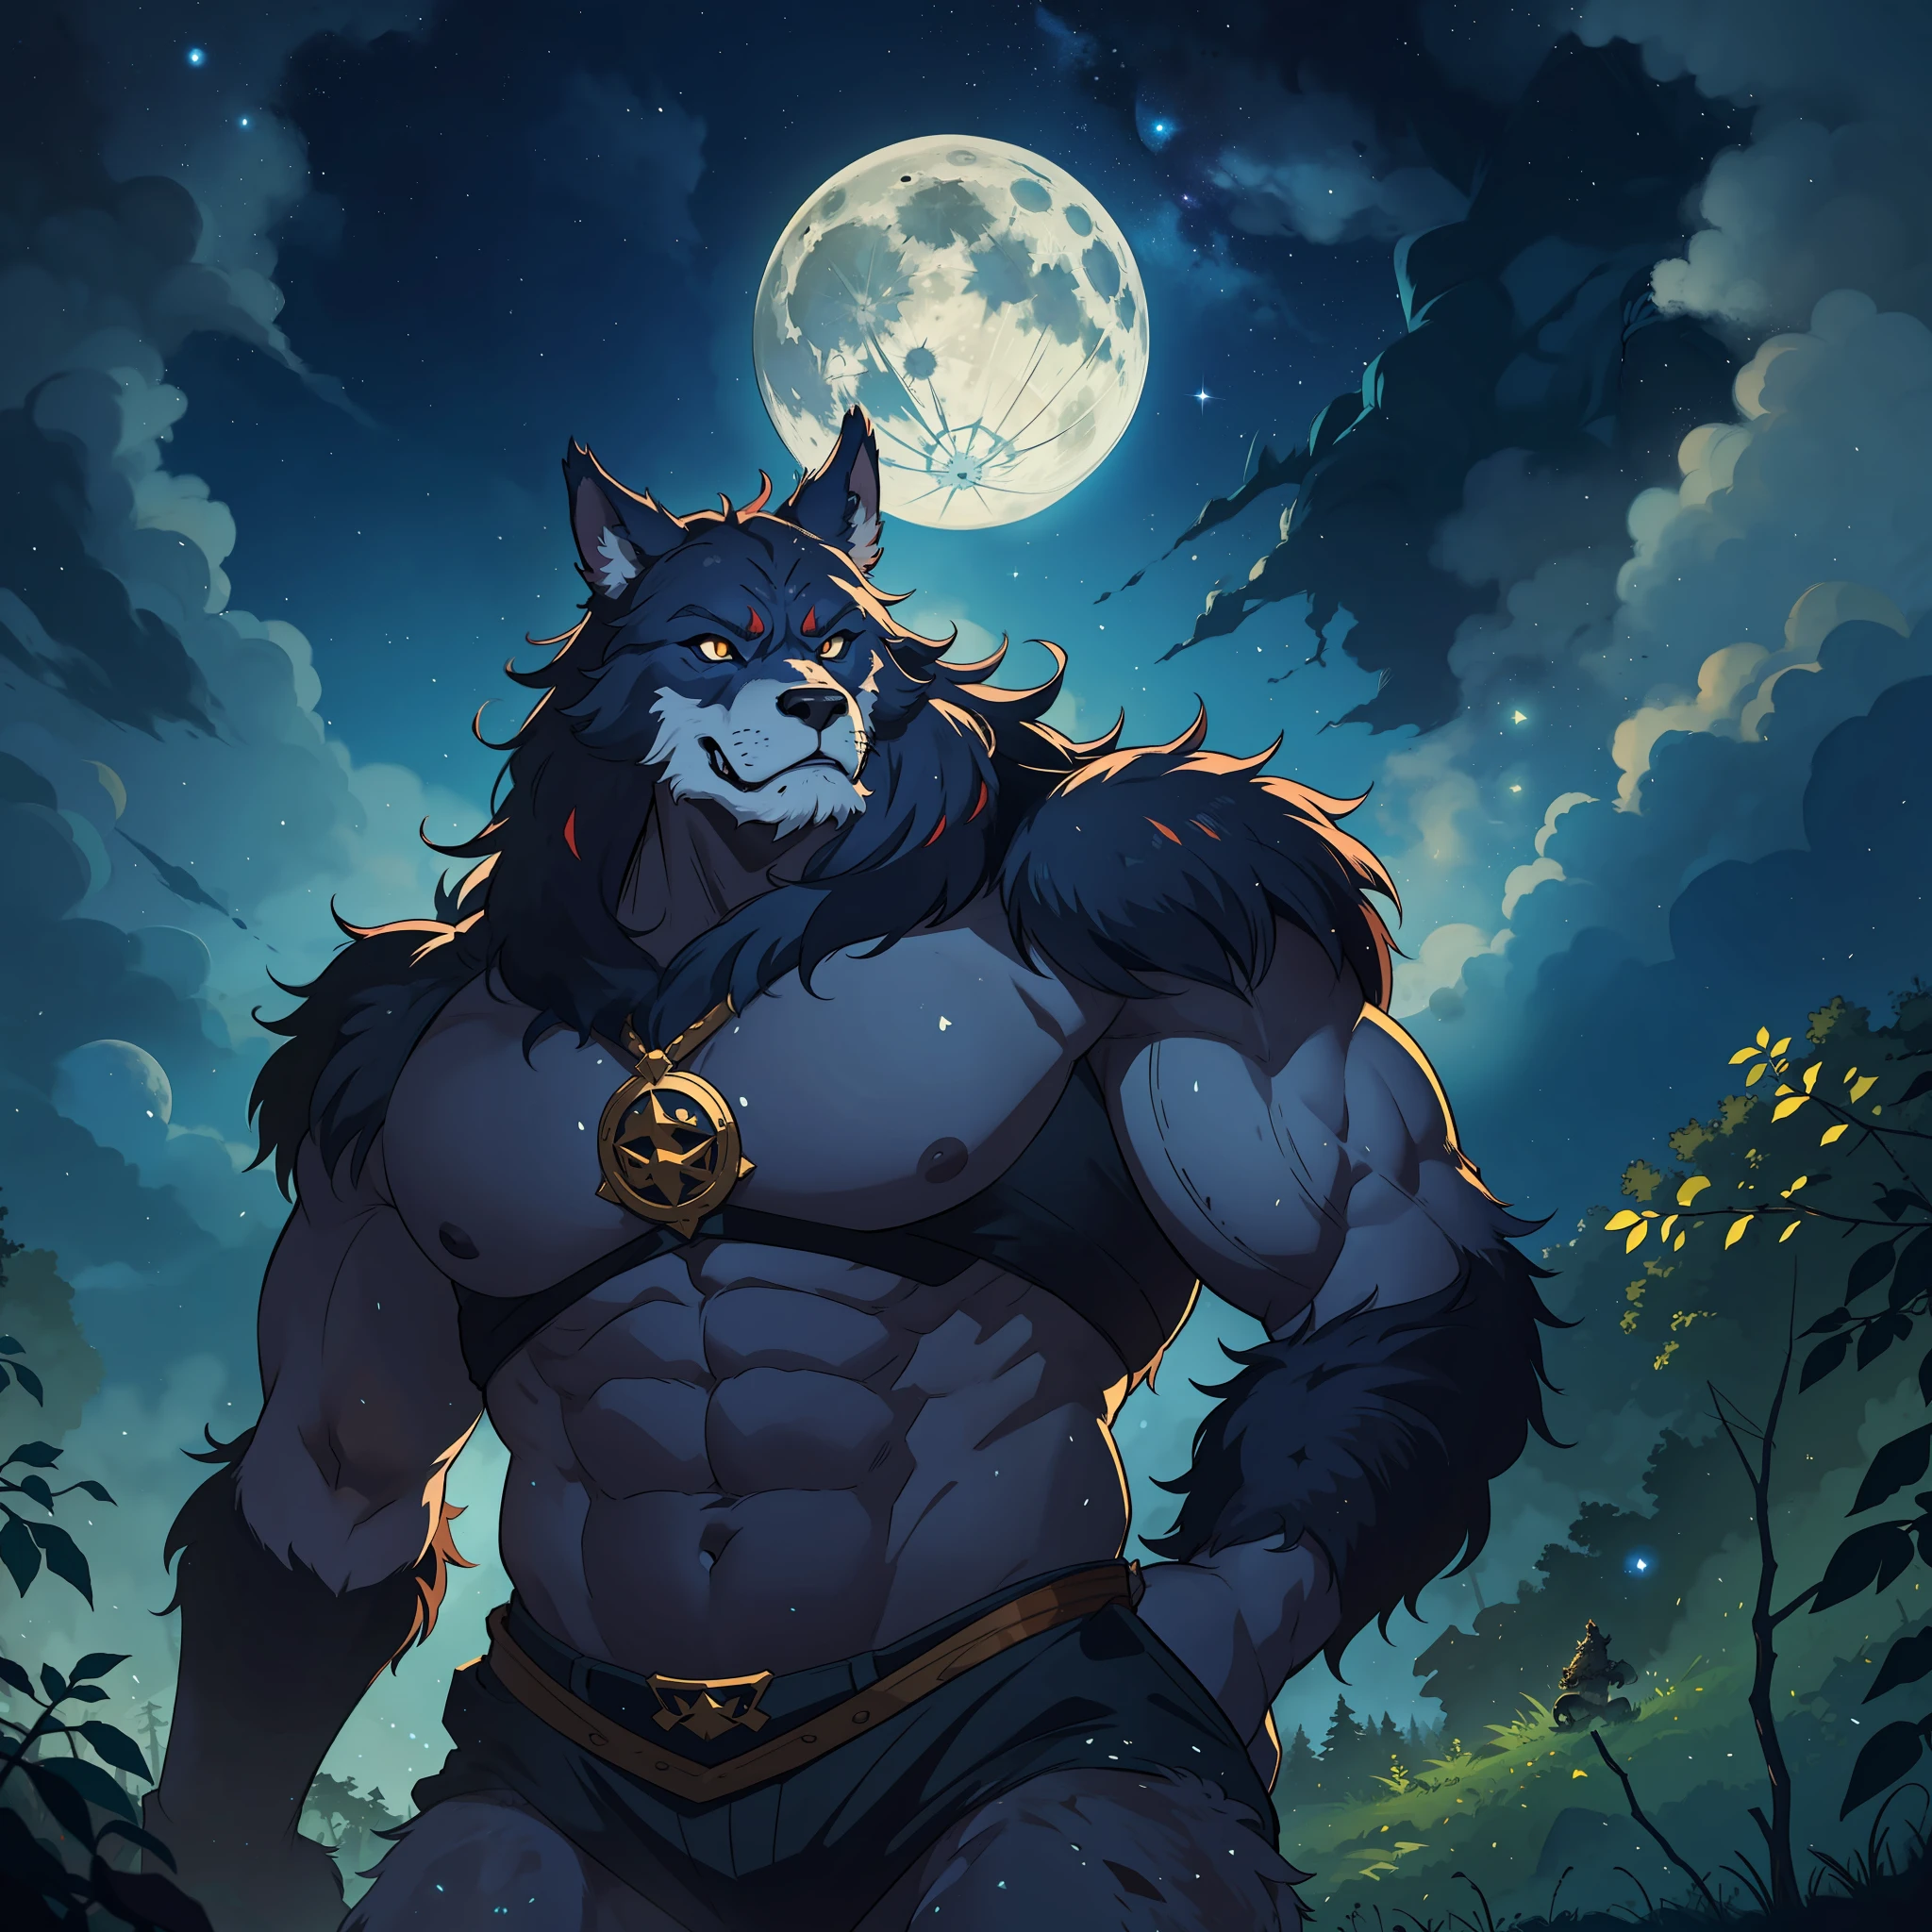 بالذئب ذو جسم واسع وكبير, وحش, إنه في وسط الغابة, البدر والسماء المرصعة بالنجوم الرائعة في خلفية لعبة تقمص الأدوار في العصور الوسطى